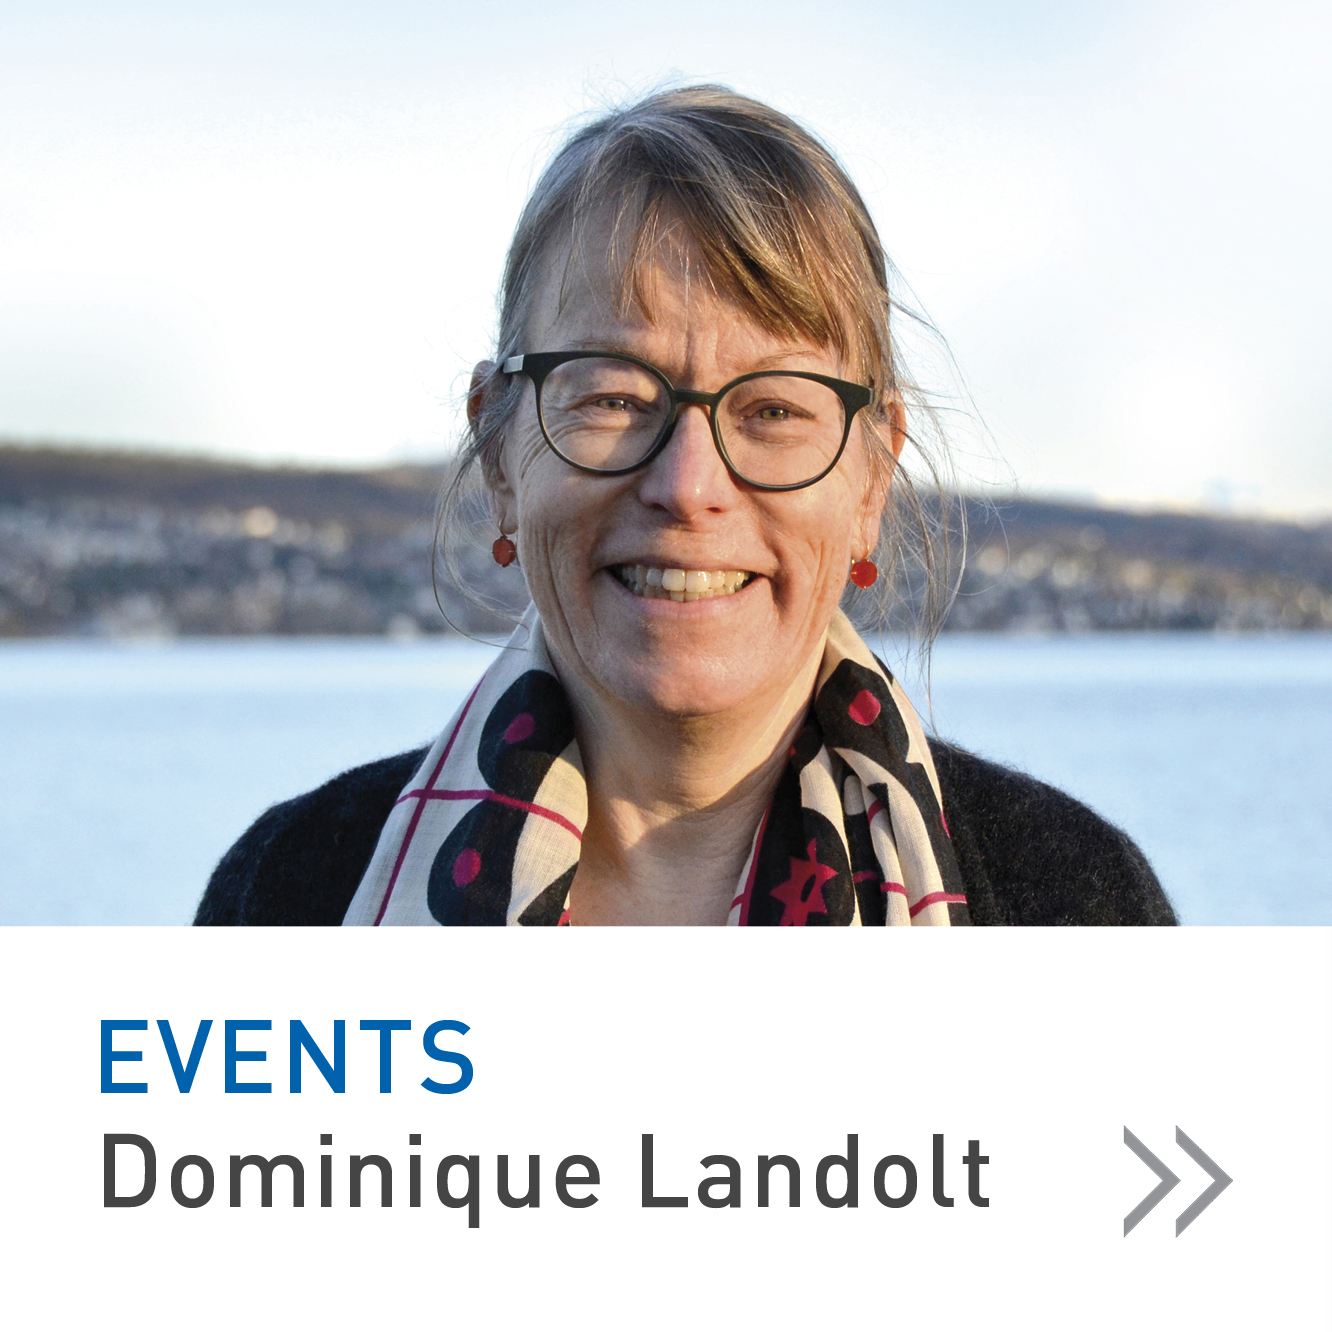 Events Dominique Landolt